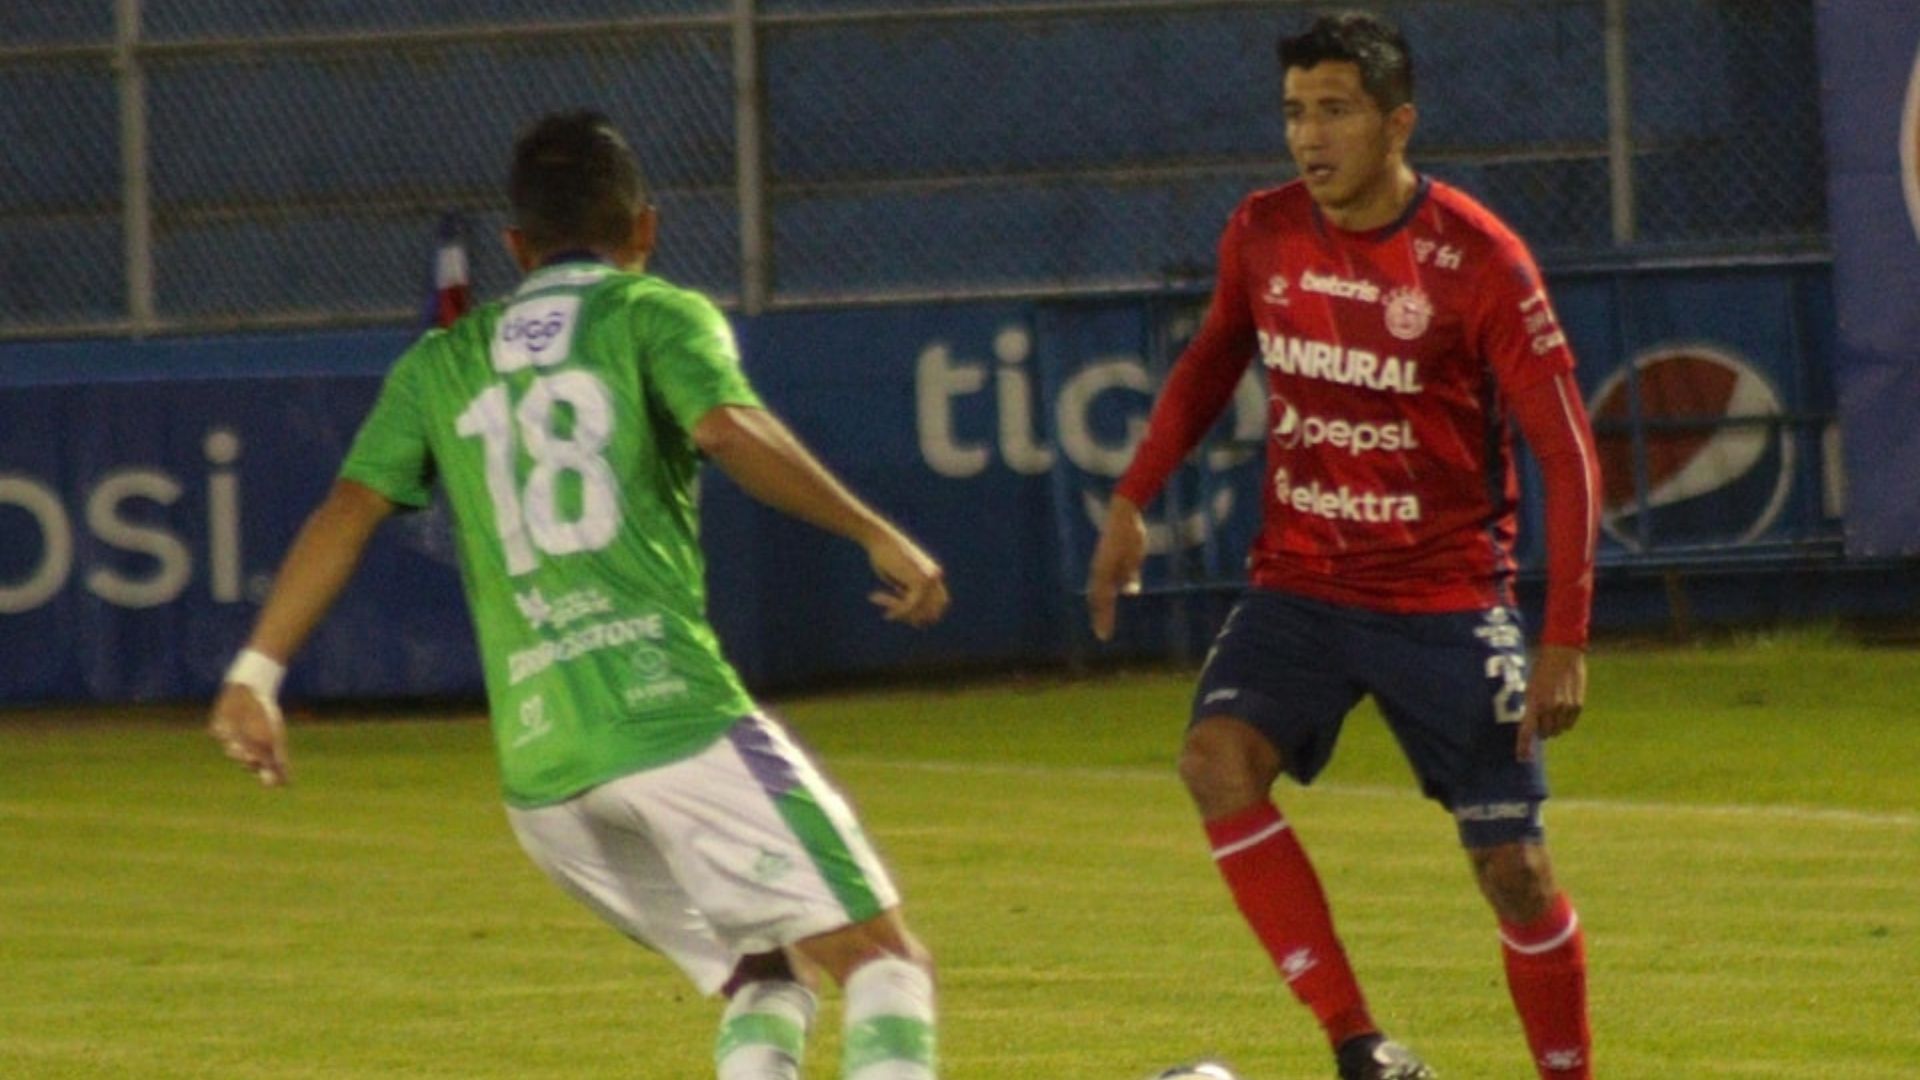 El jugador de Xela, Kevin Ruiz, contra el jugador de Antigua, Oscar Santis (18) en el Estadio Mario Camposeco de Quetzaltenango. (Foto Prensa Libre: XelajúMC-Facebook)